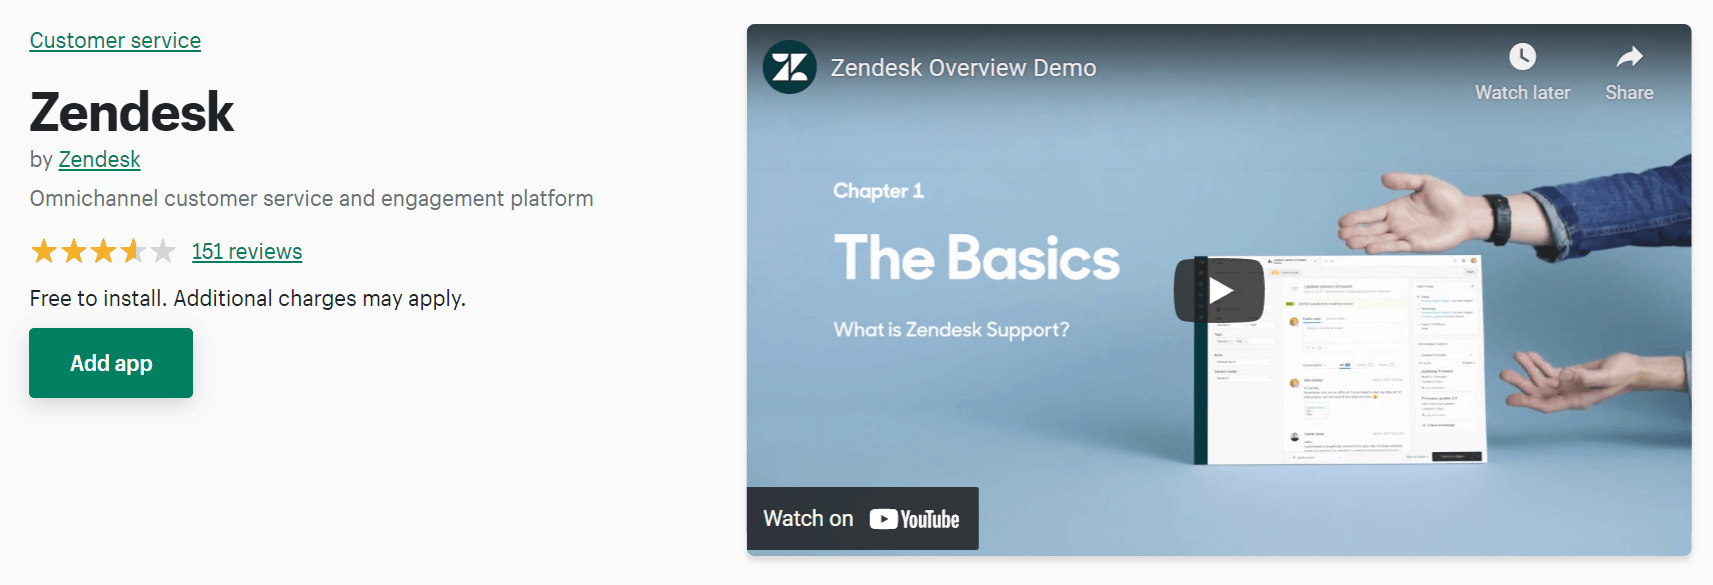 Aplicativo de suporte ao cliente Zendesk